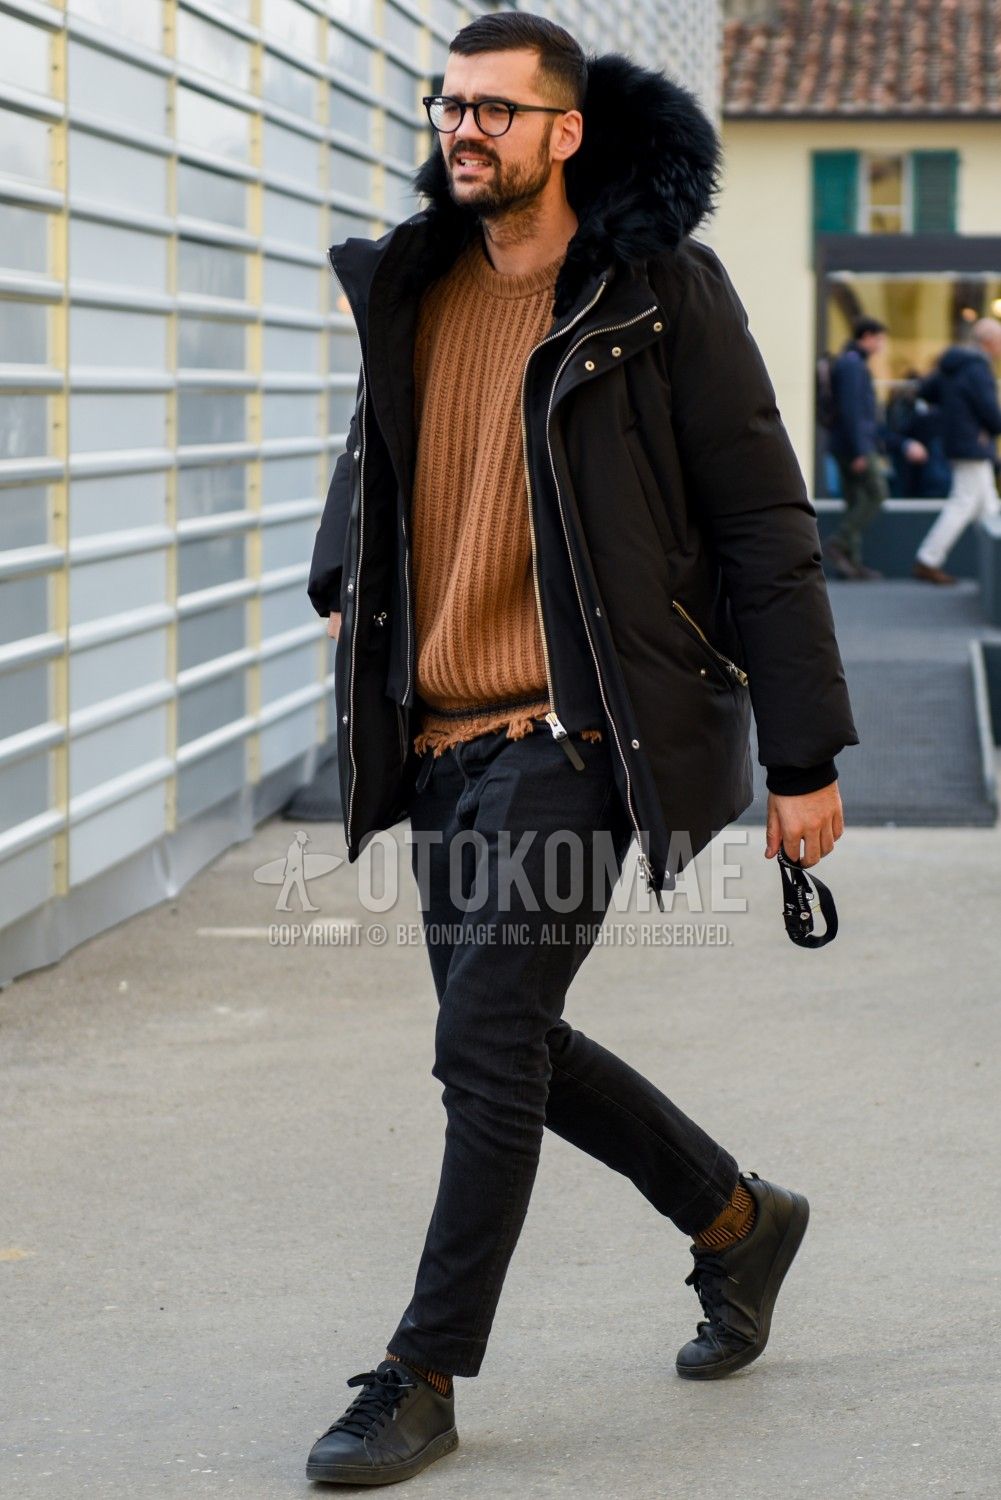 黒ダウンジャケットのメンズコーデで参考にしたい注目スナップをピックアップ メンズファッションメディア Otokomae 男前研究所